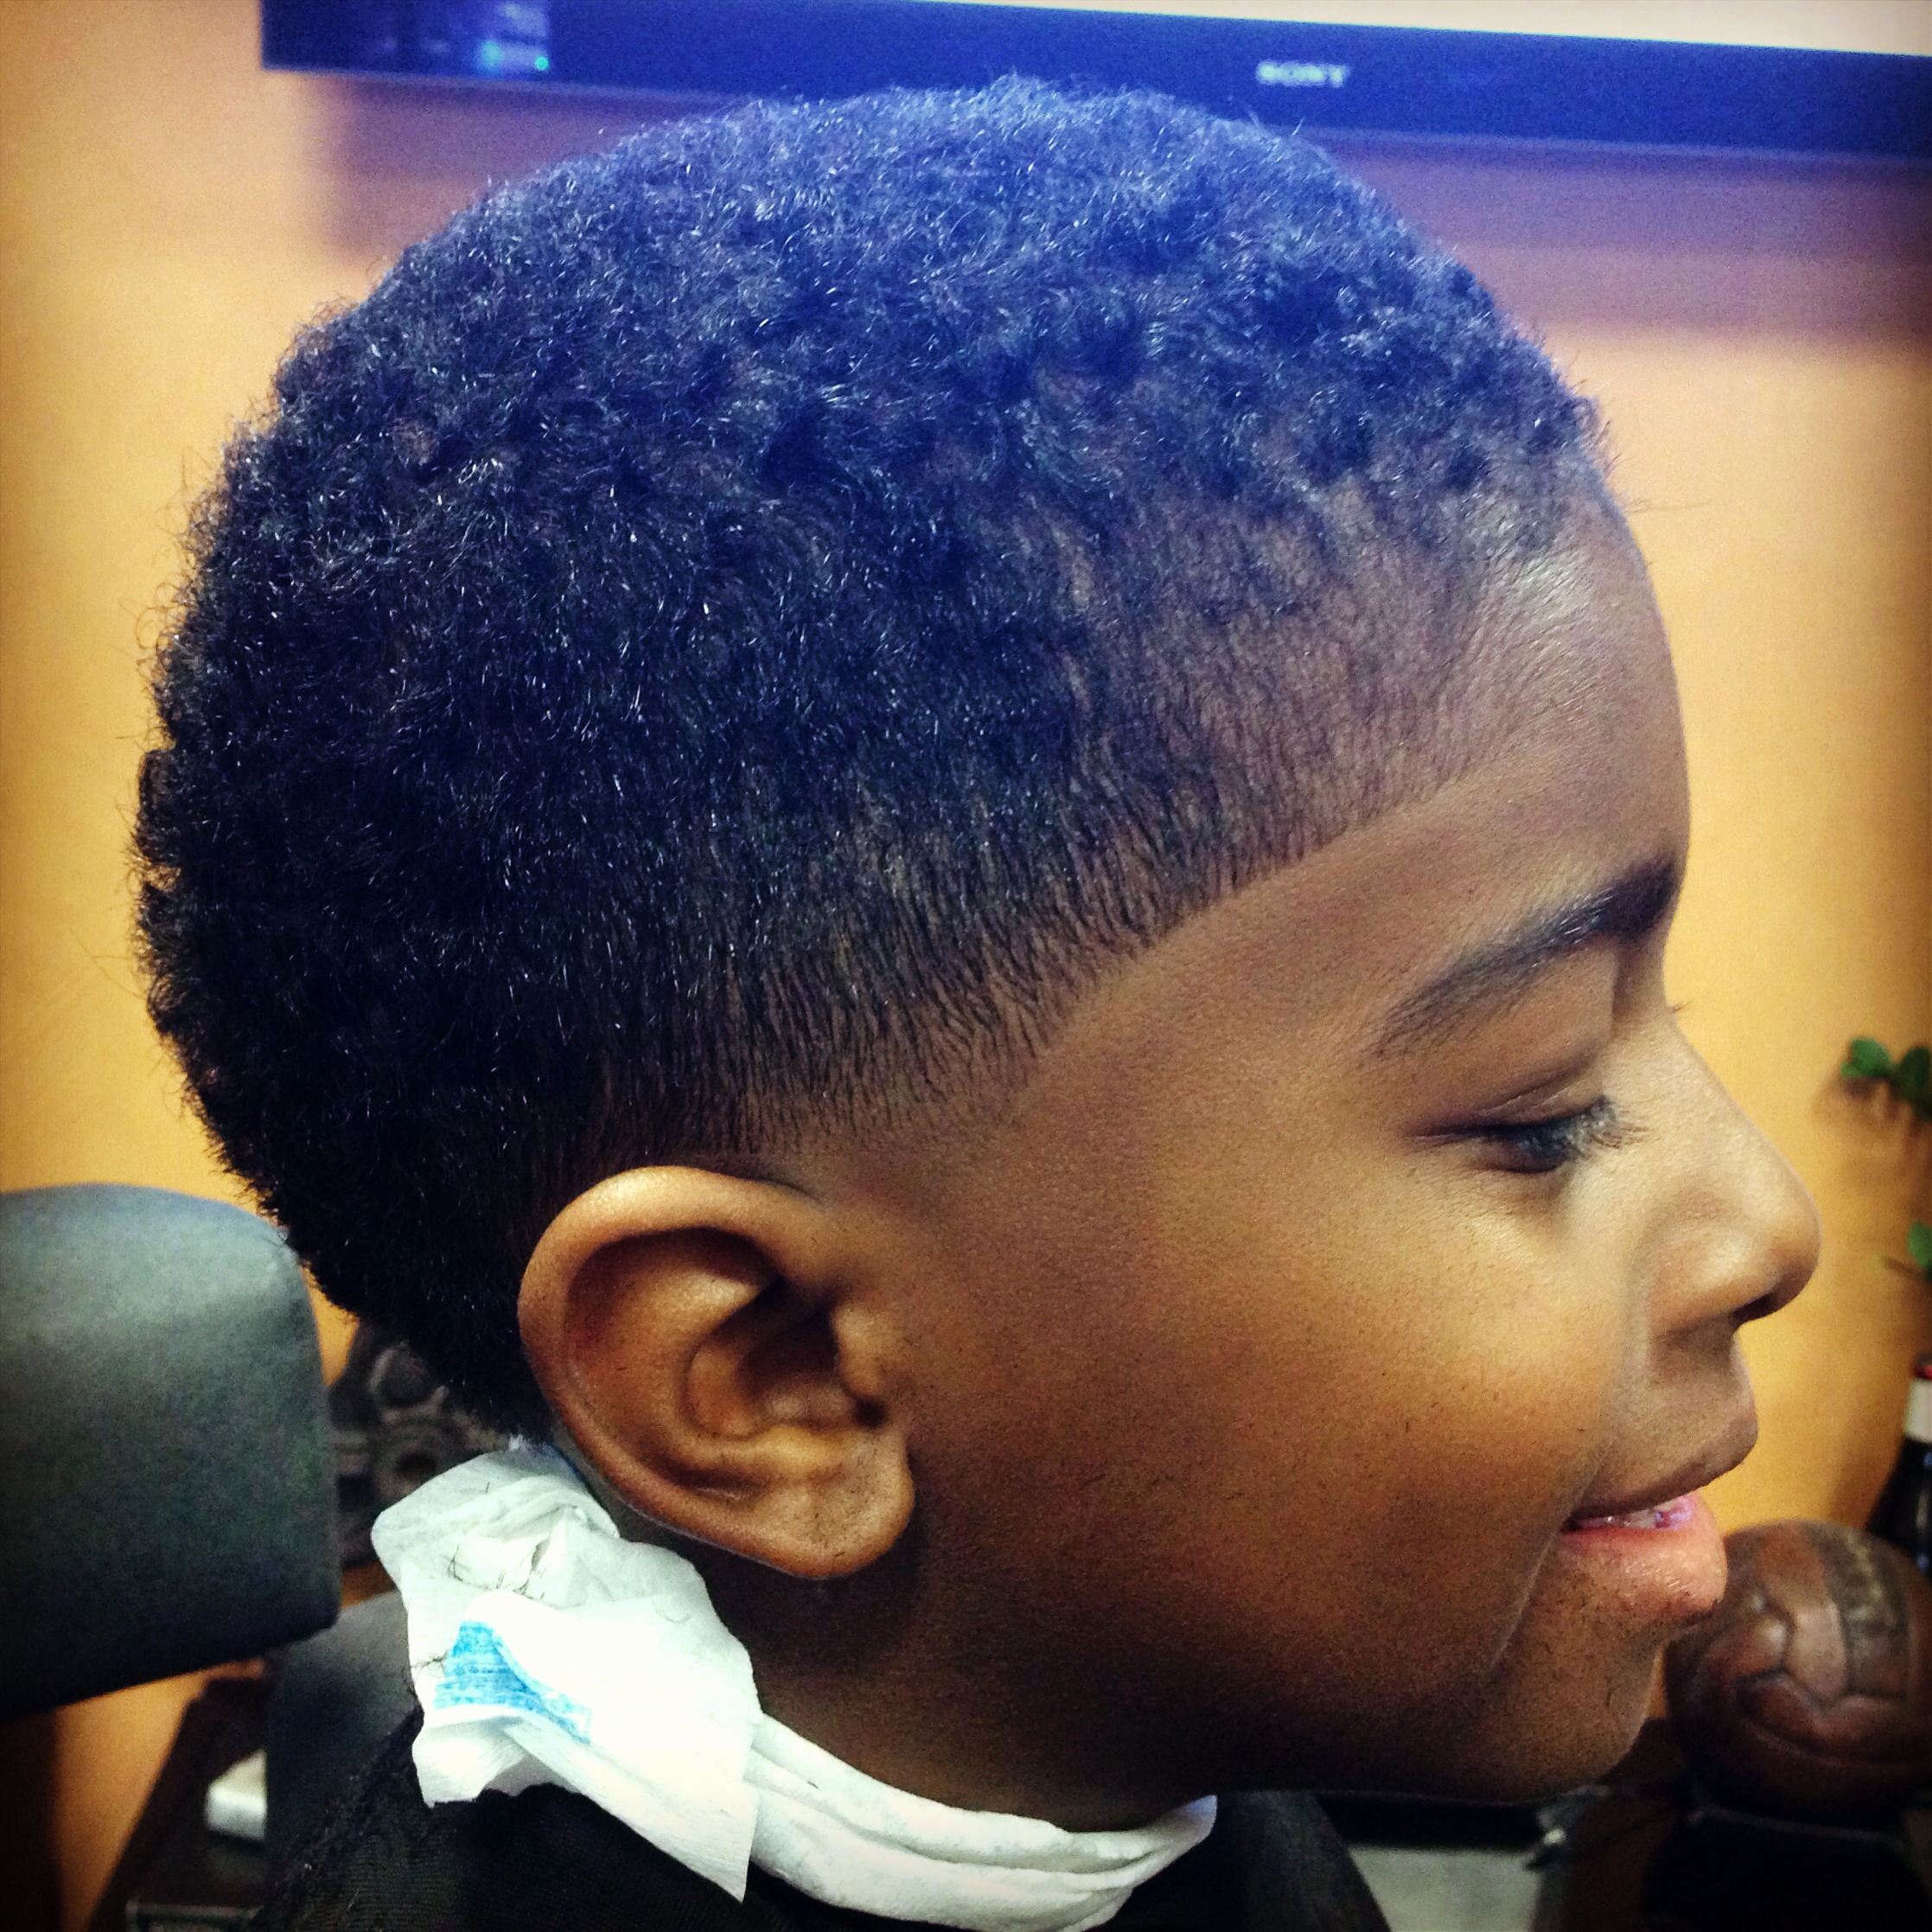 Black Guy Haircut Lovely Kid Haircut Ushercut - Hair Cut Ideas ...